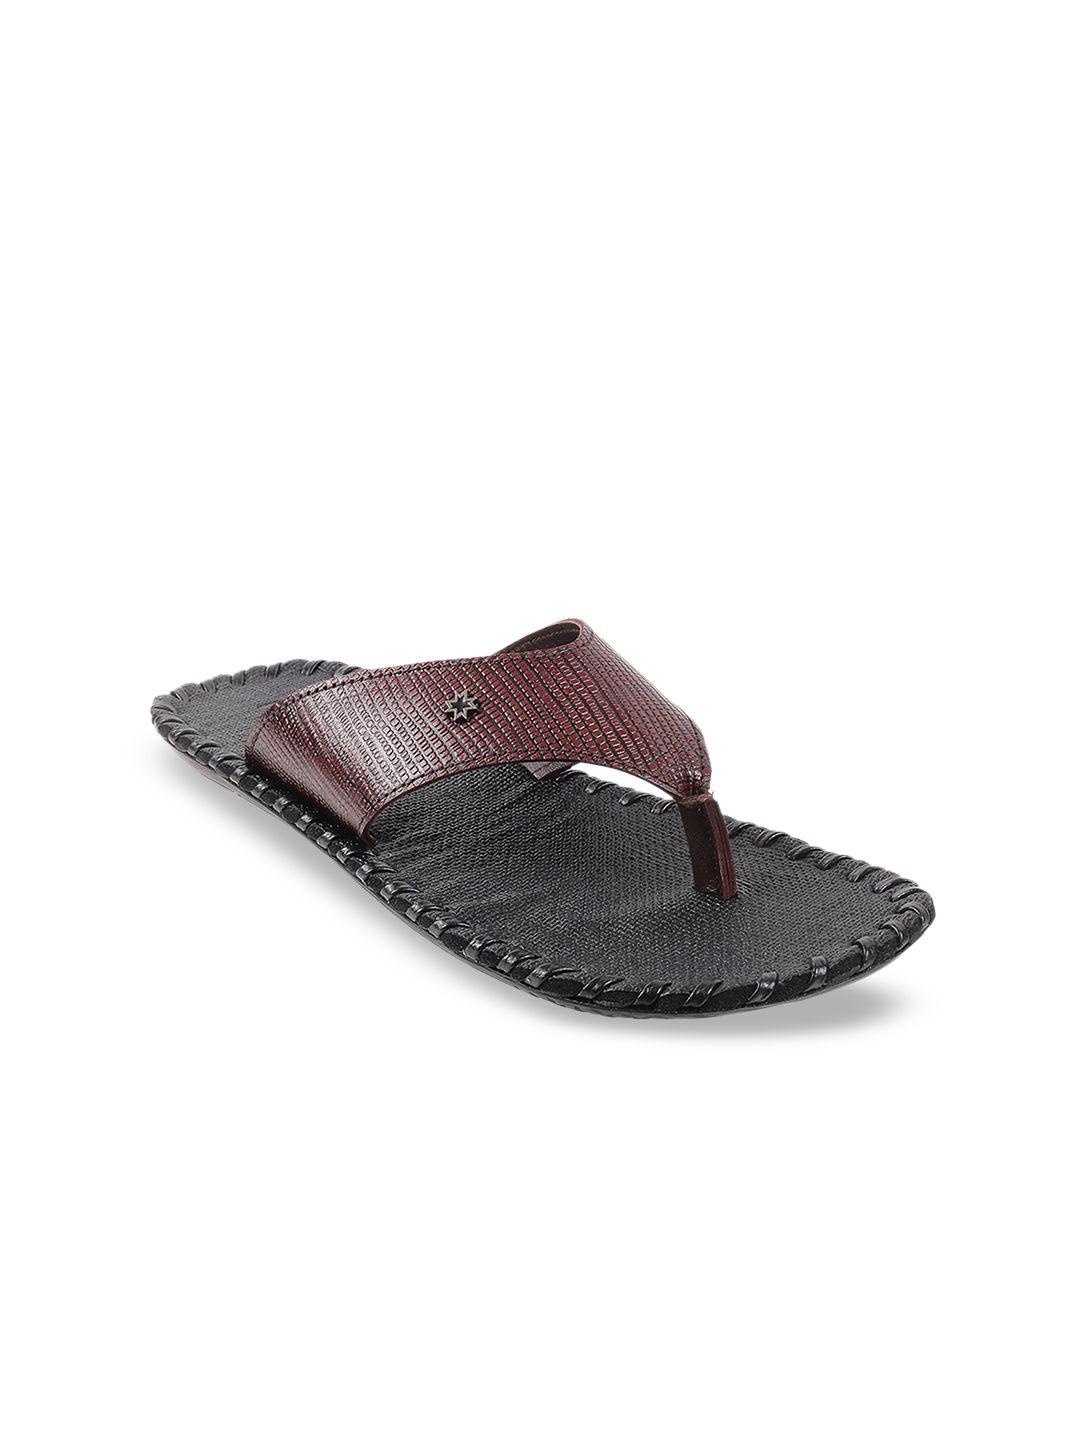 metro men maroon comfort sandals